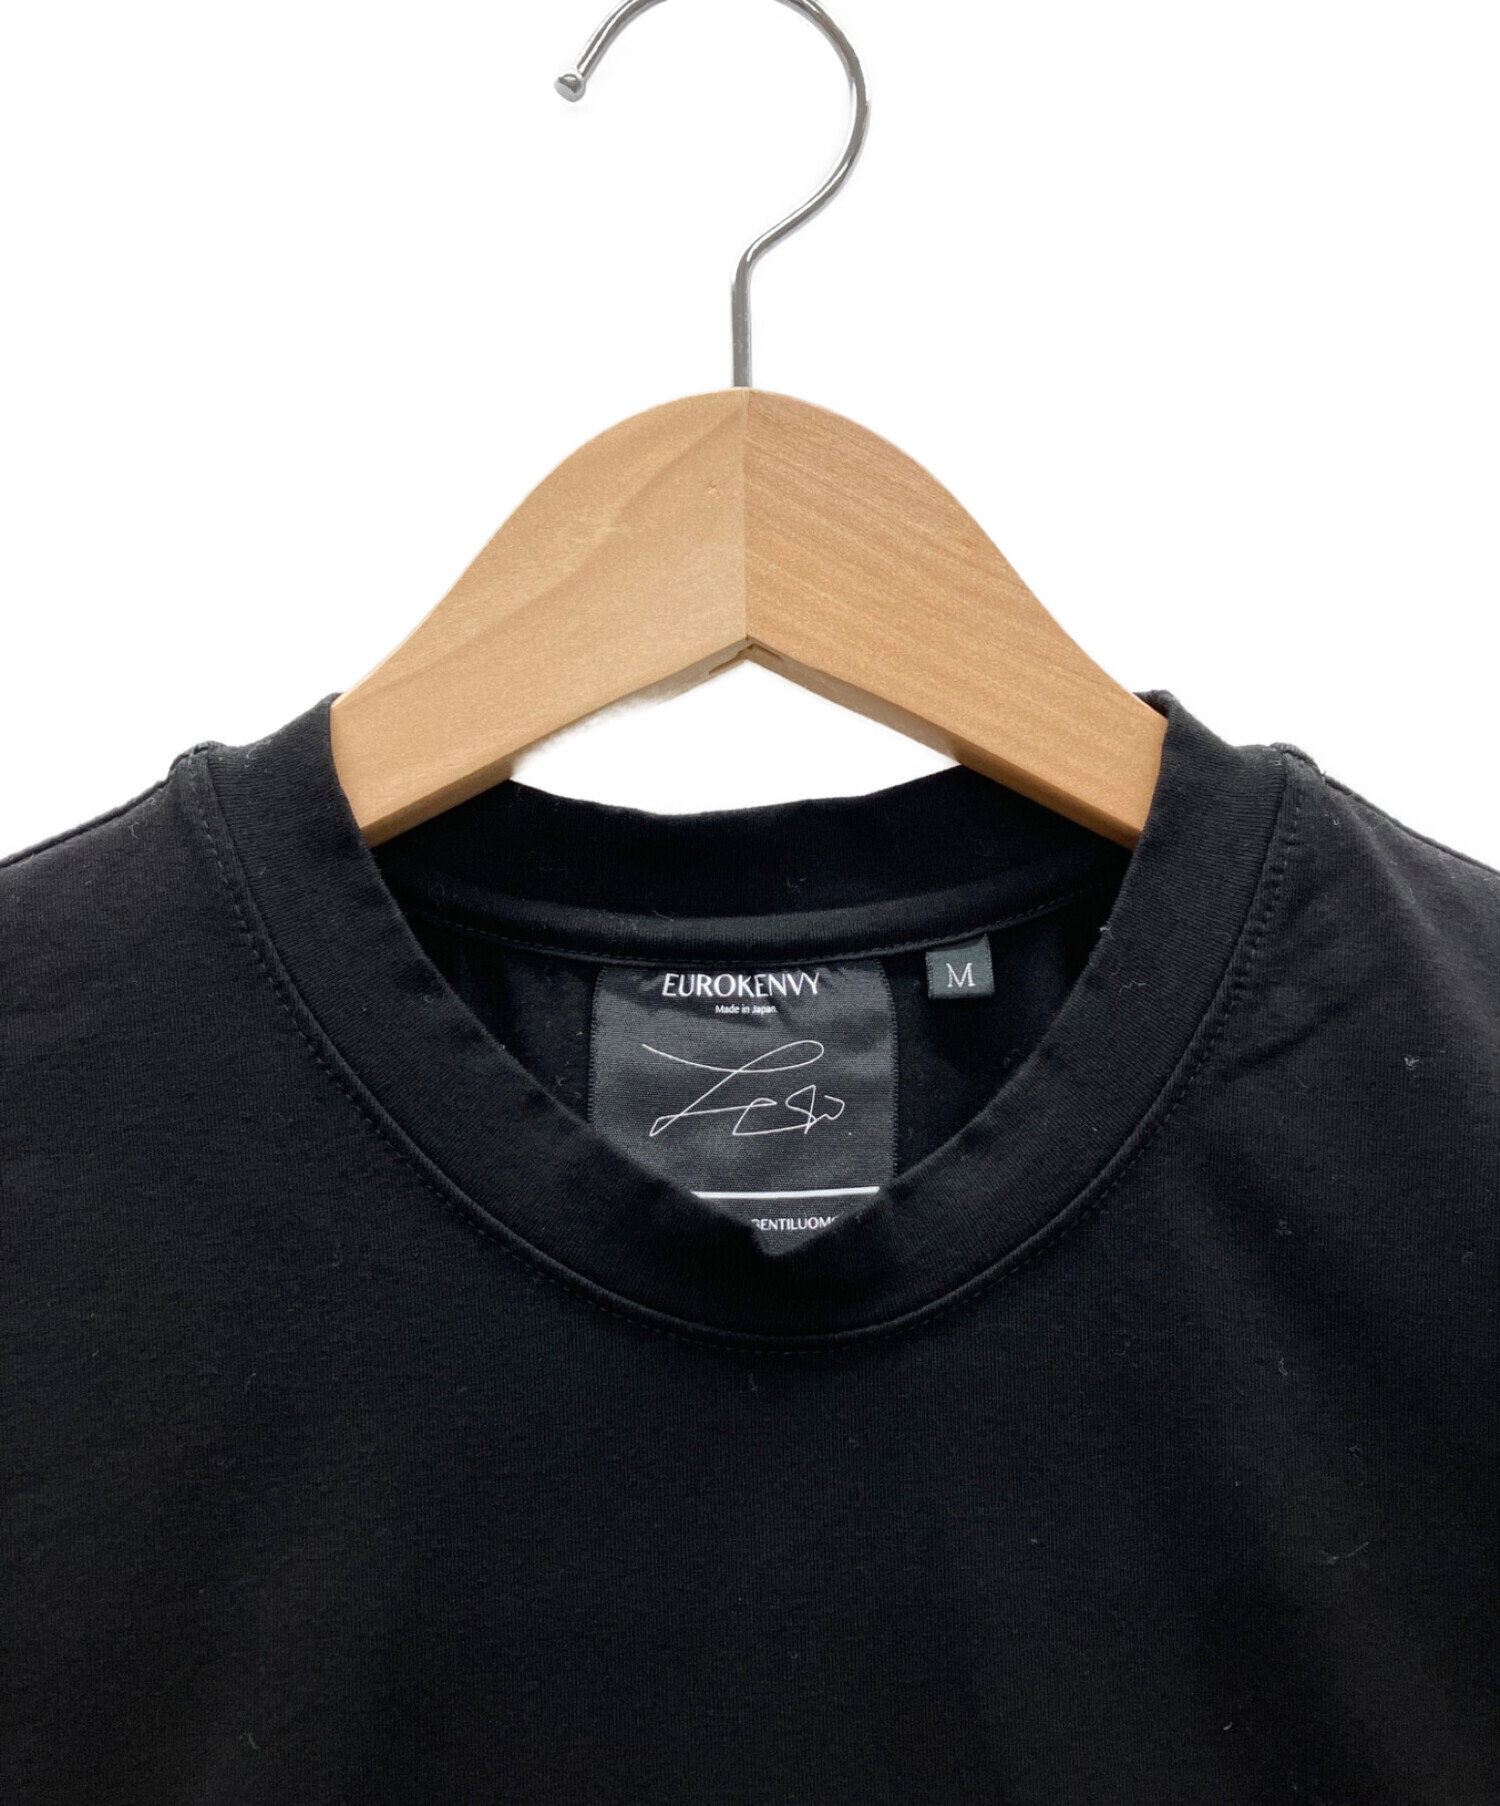 EUROKENVY (ユーロケンビー) Tシャツ ブラック サイズ:M